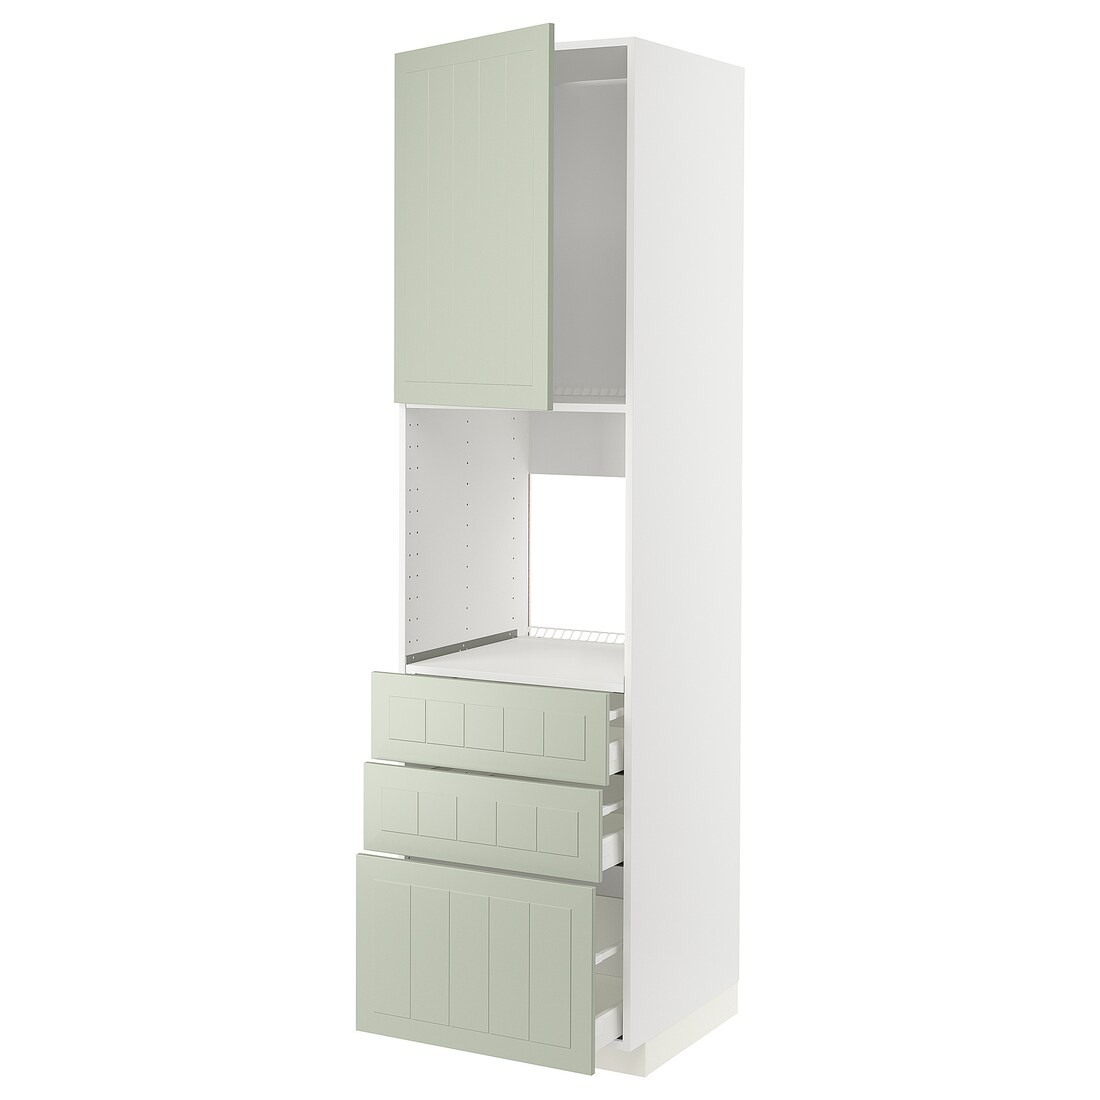 IKEA METOD МЕТОД / MAXIMERA МАКСИМЕРА Высокий шкаф для духовки, белый / Stensund светло-зеленый, 60x60x220 см 89486480 | 894.864.80